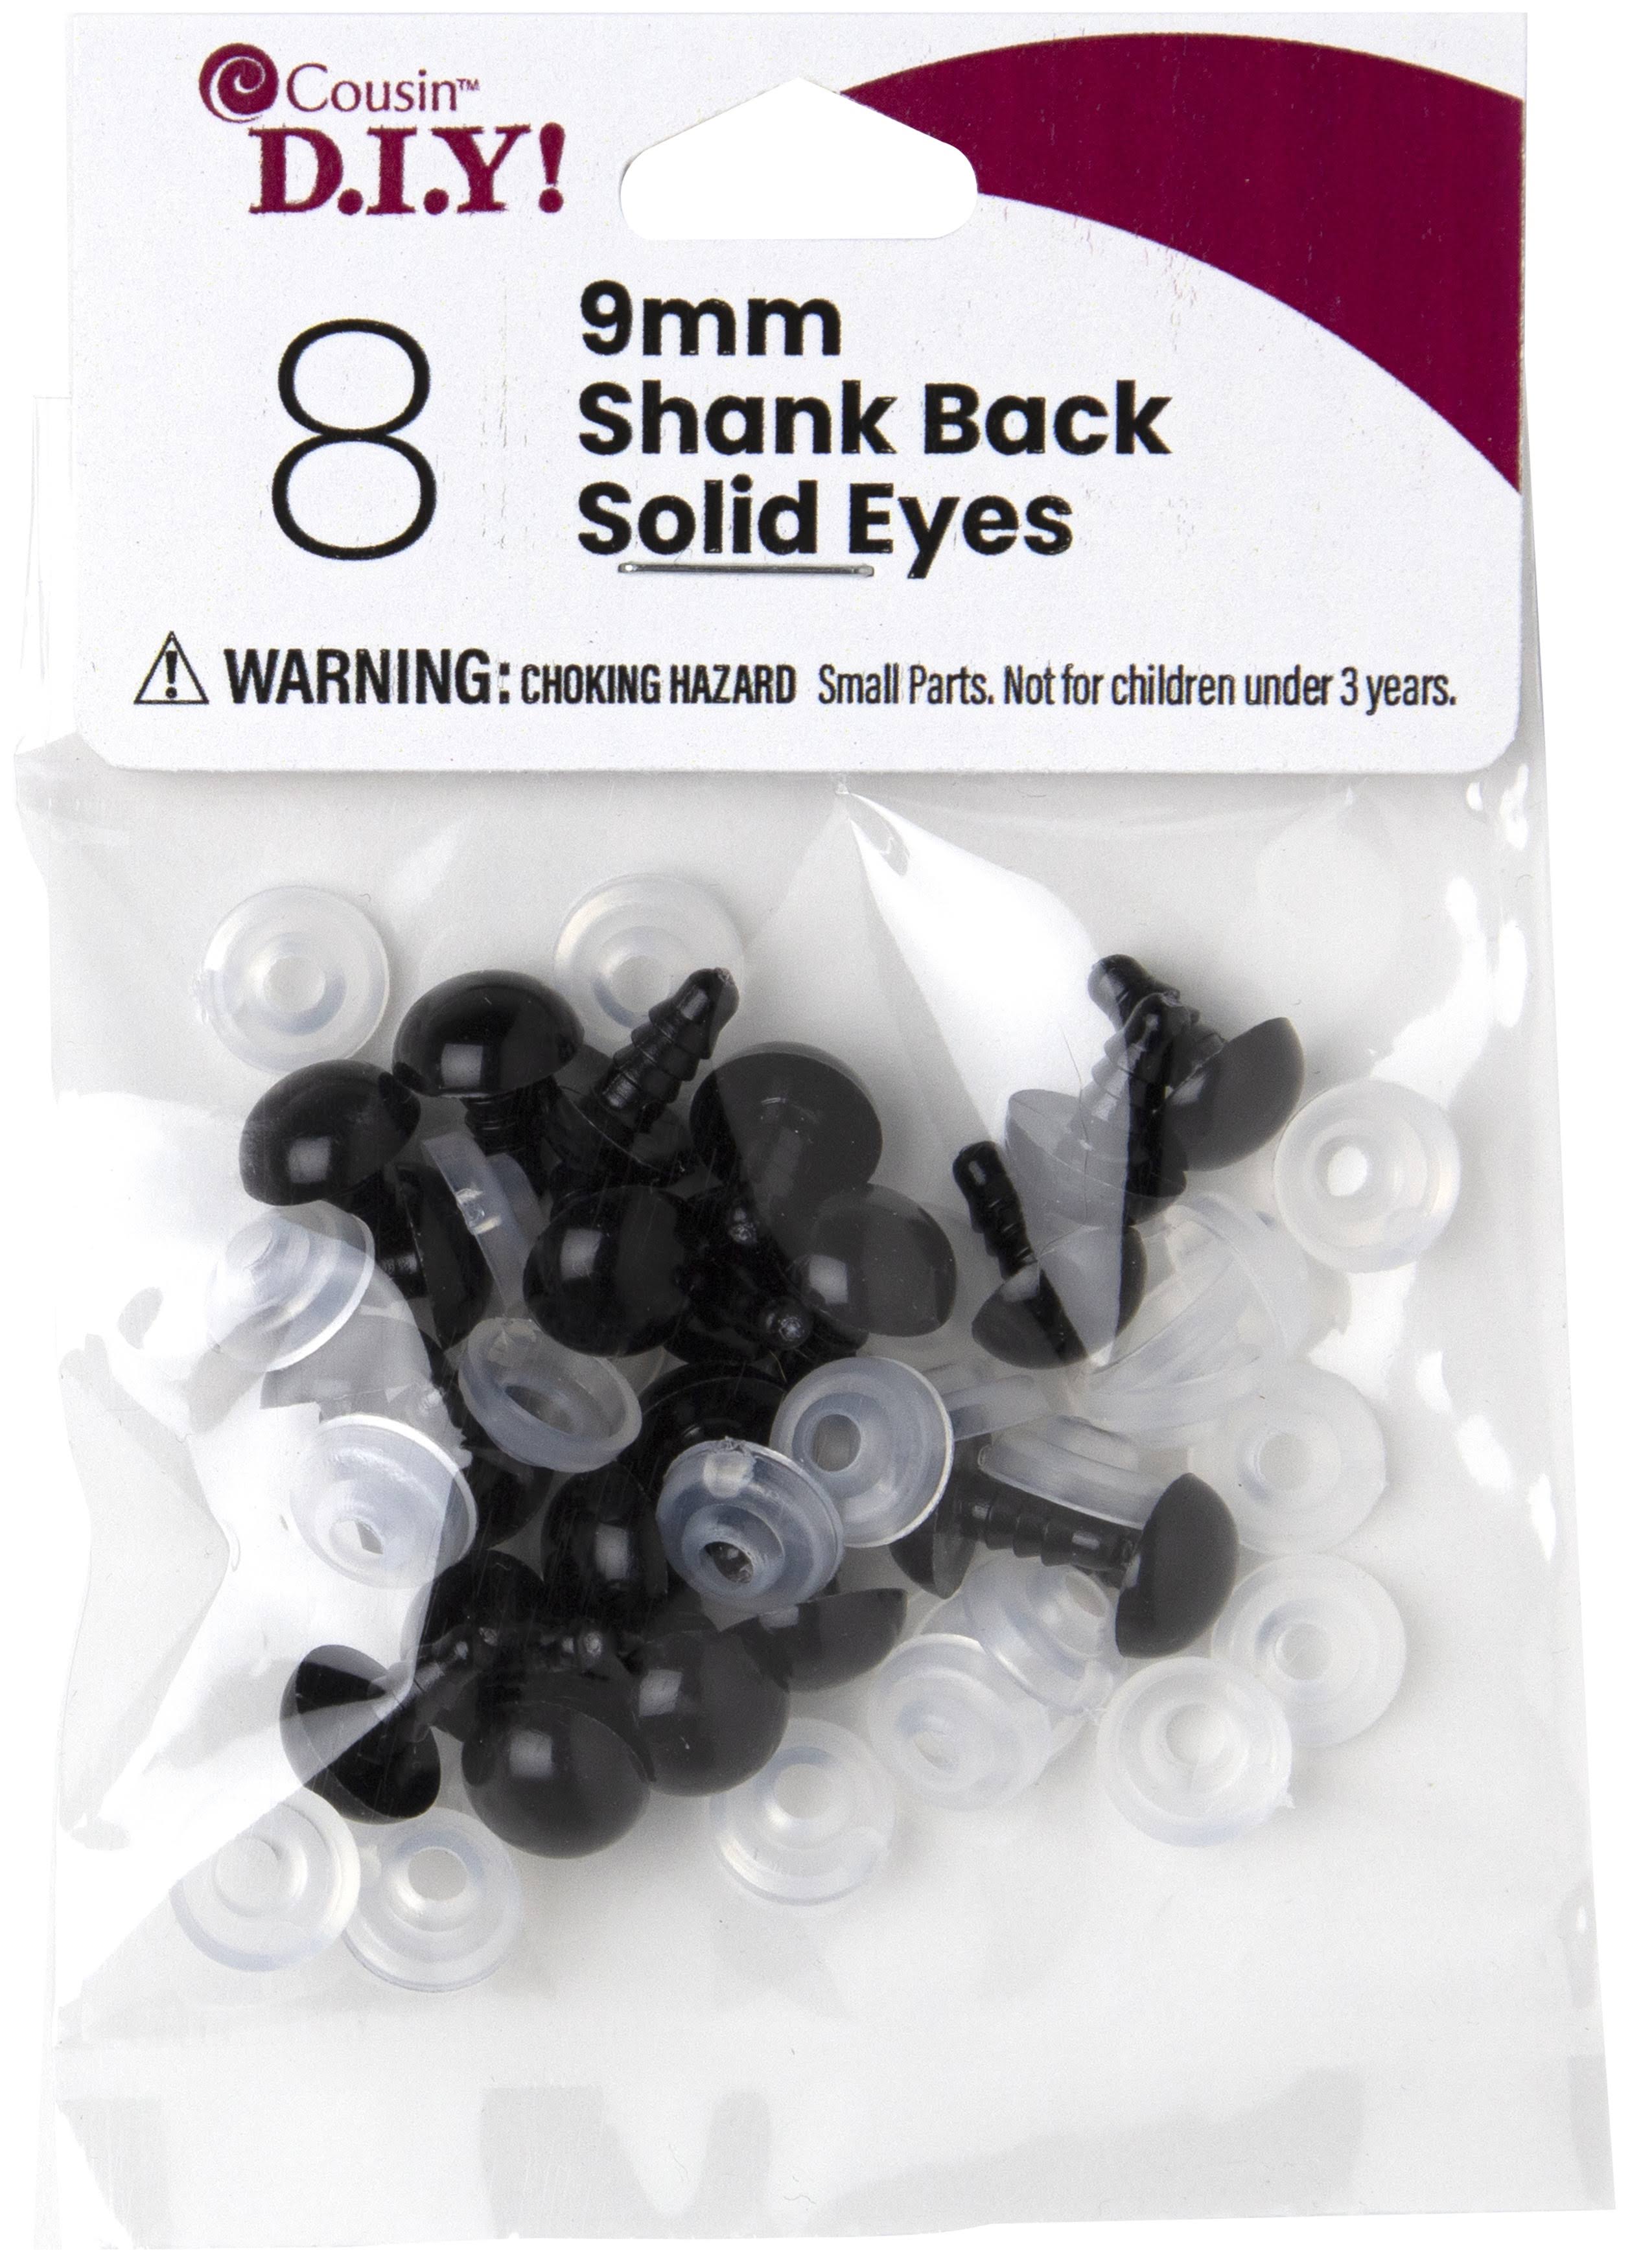 Cousin Shank Back Solid Eyes 9mm 8 Pack - Black